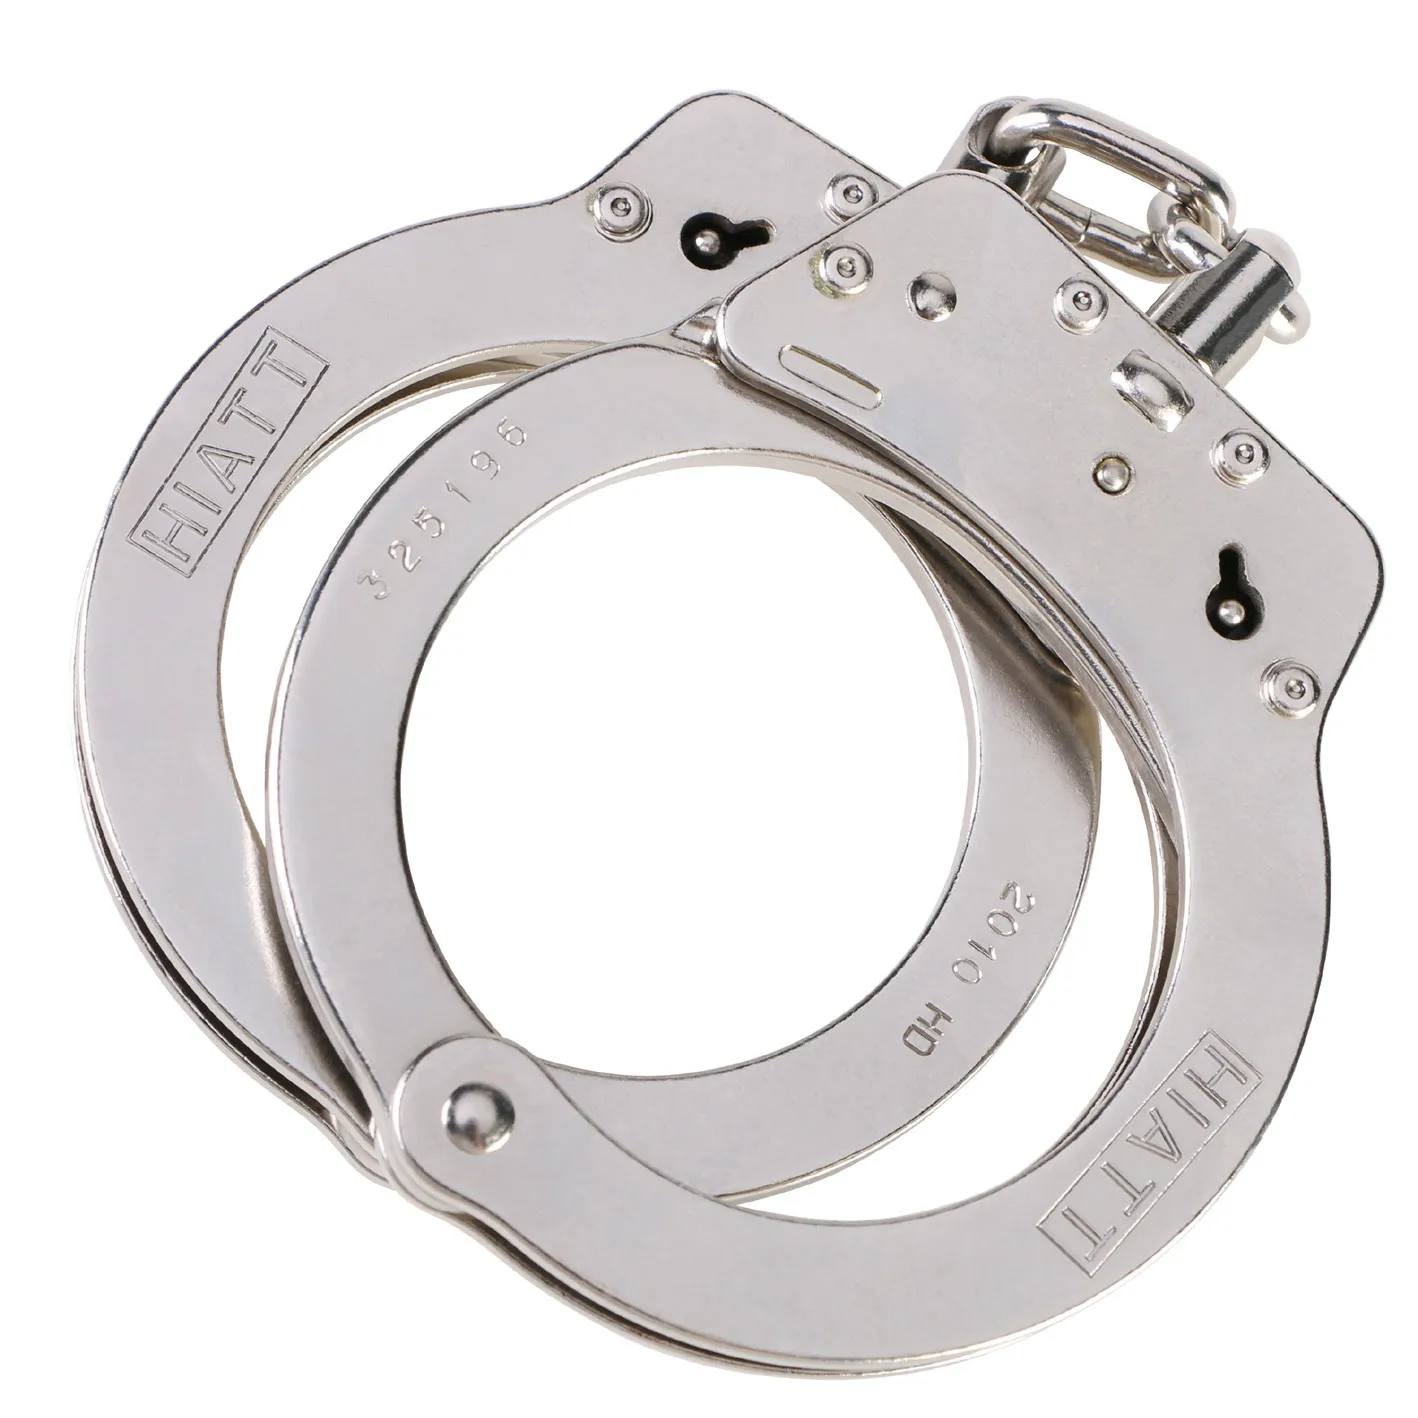 Hiatt Standard Steel Chain Handcuffs - Nickel